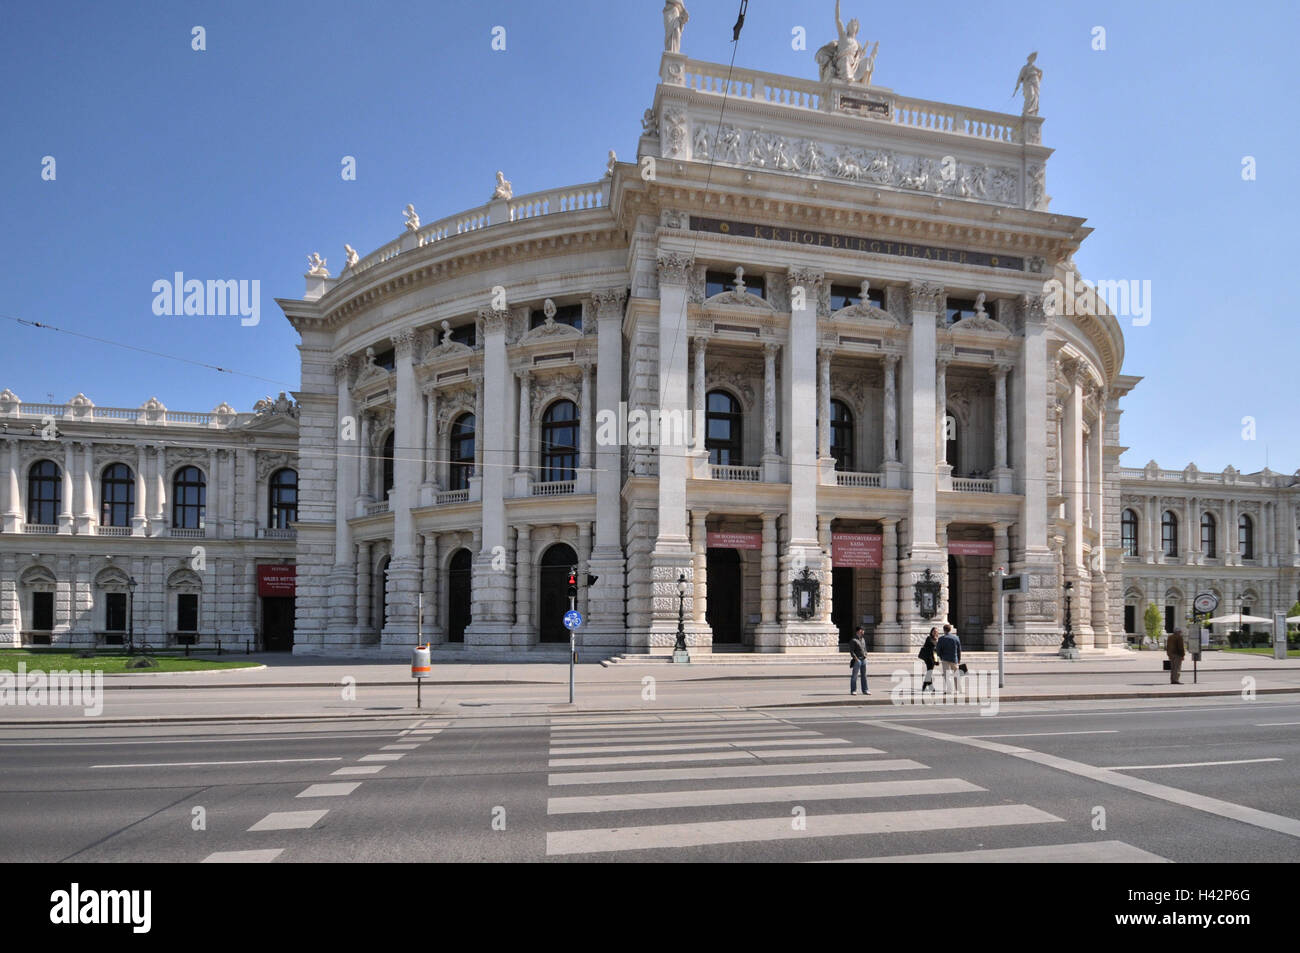 Austria, Vienna, Burgtheater, passer-by, Stock Photo